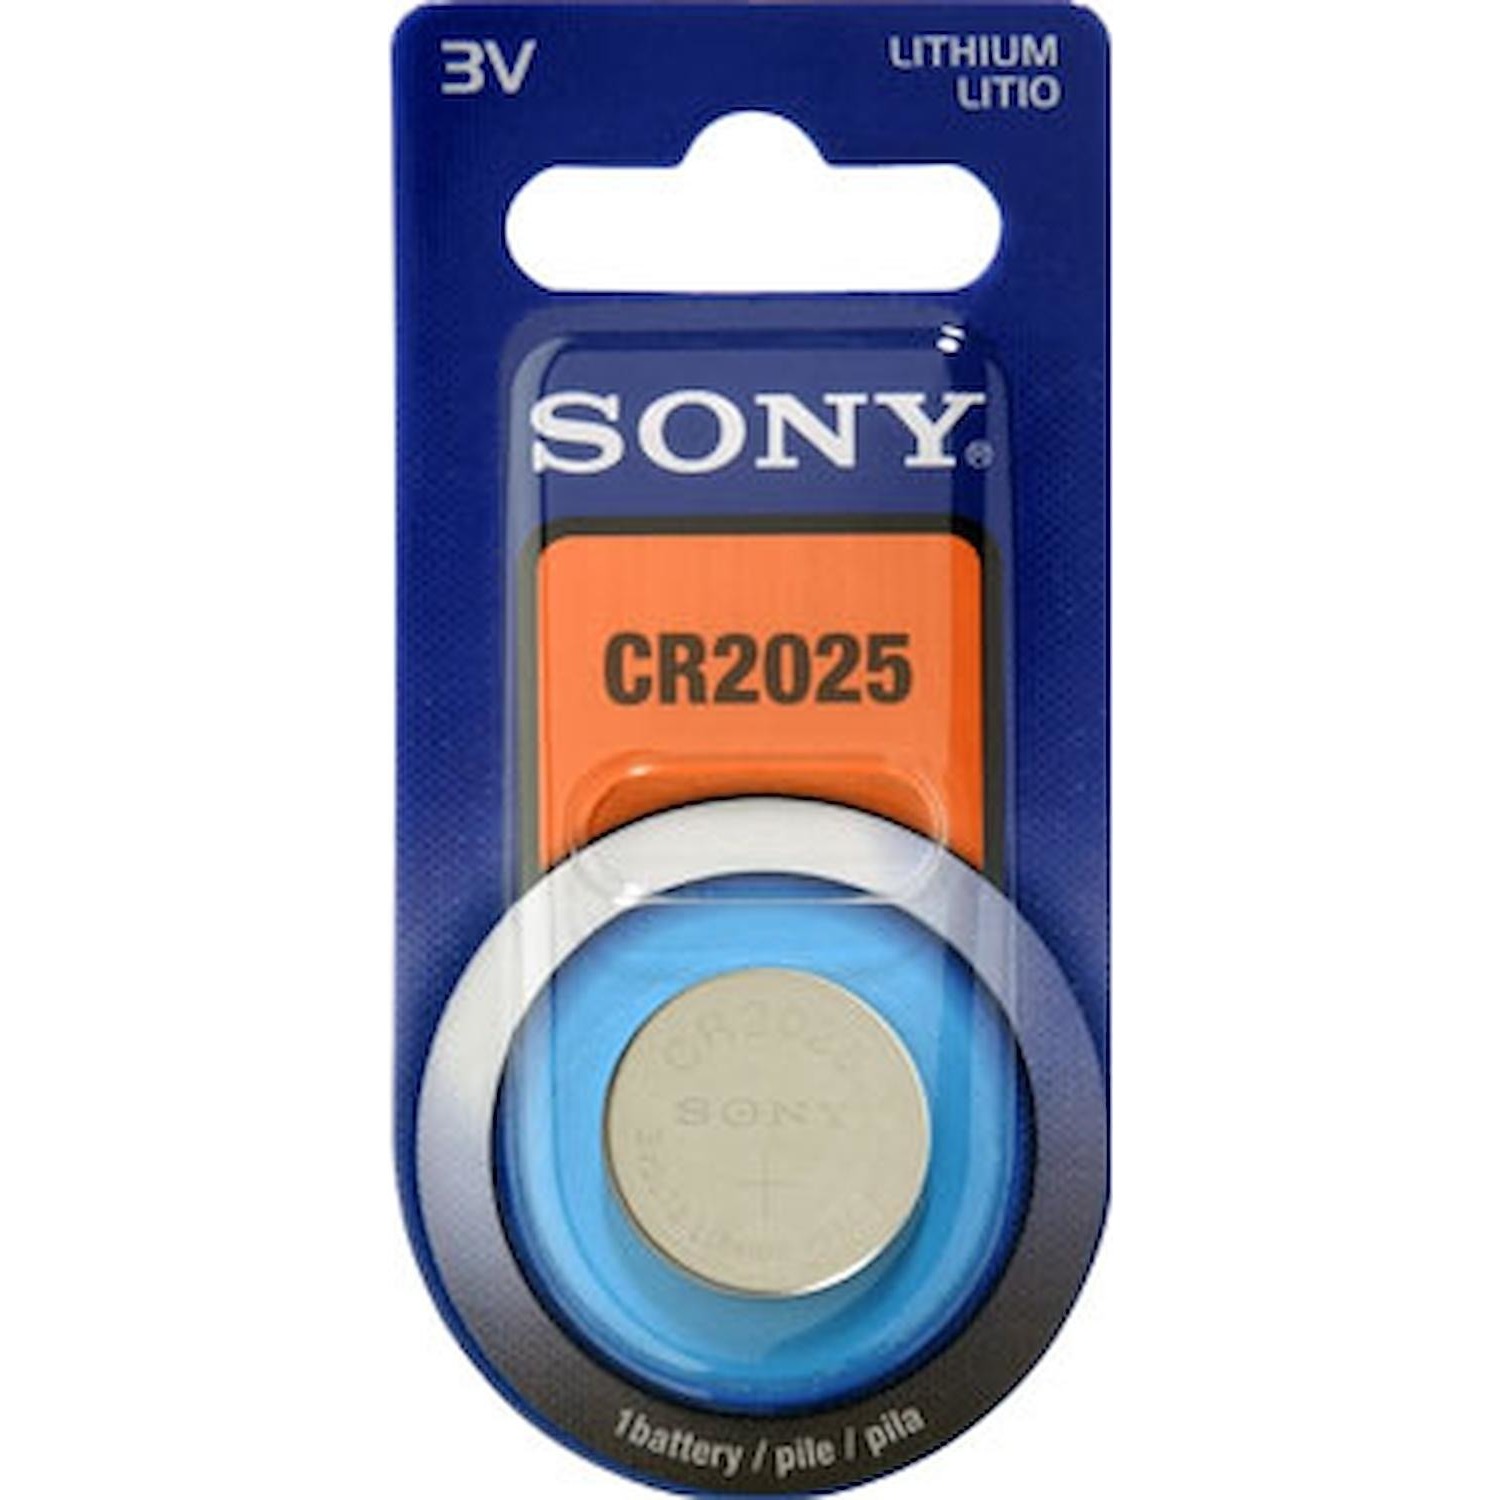 Immagine per Batteria pila Sony CR 2025-B da DIMOStore